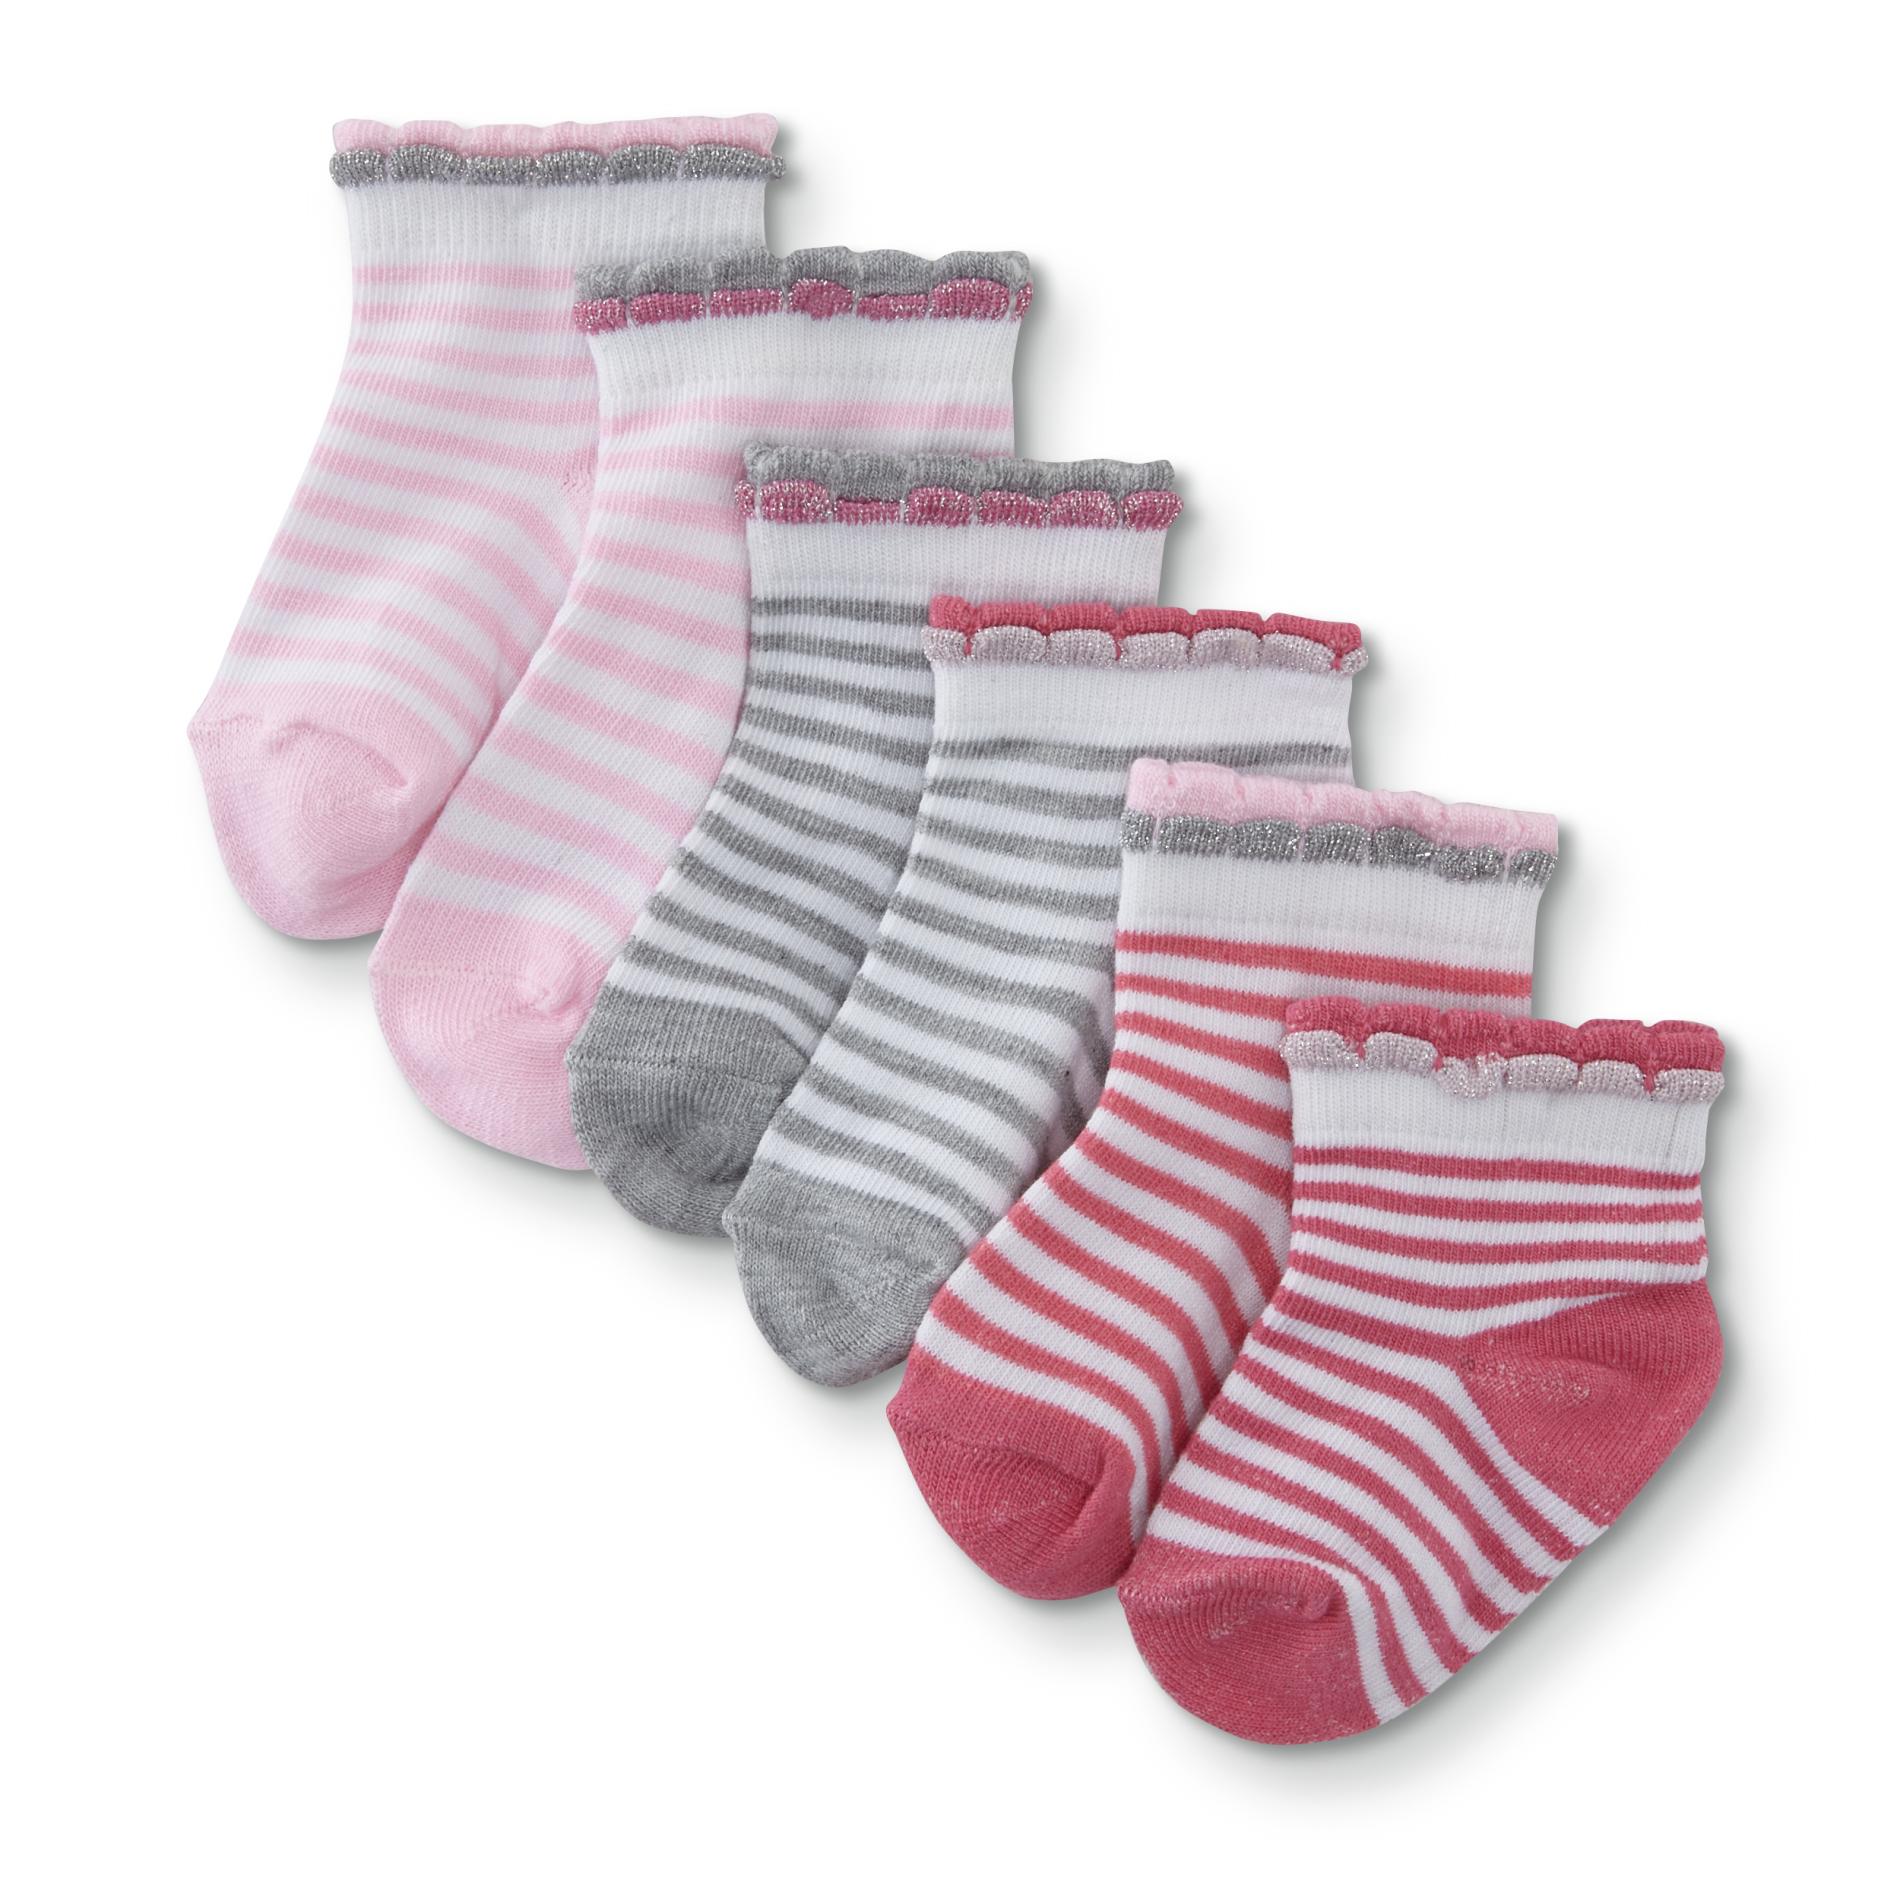 Toddler Girls' 6-Pairs Socks - Striped